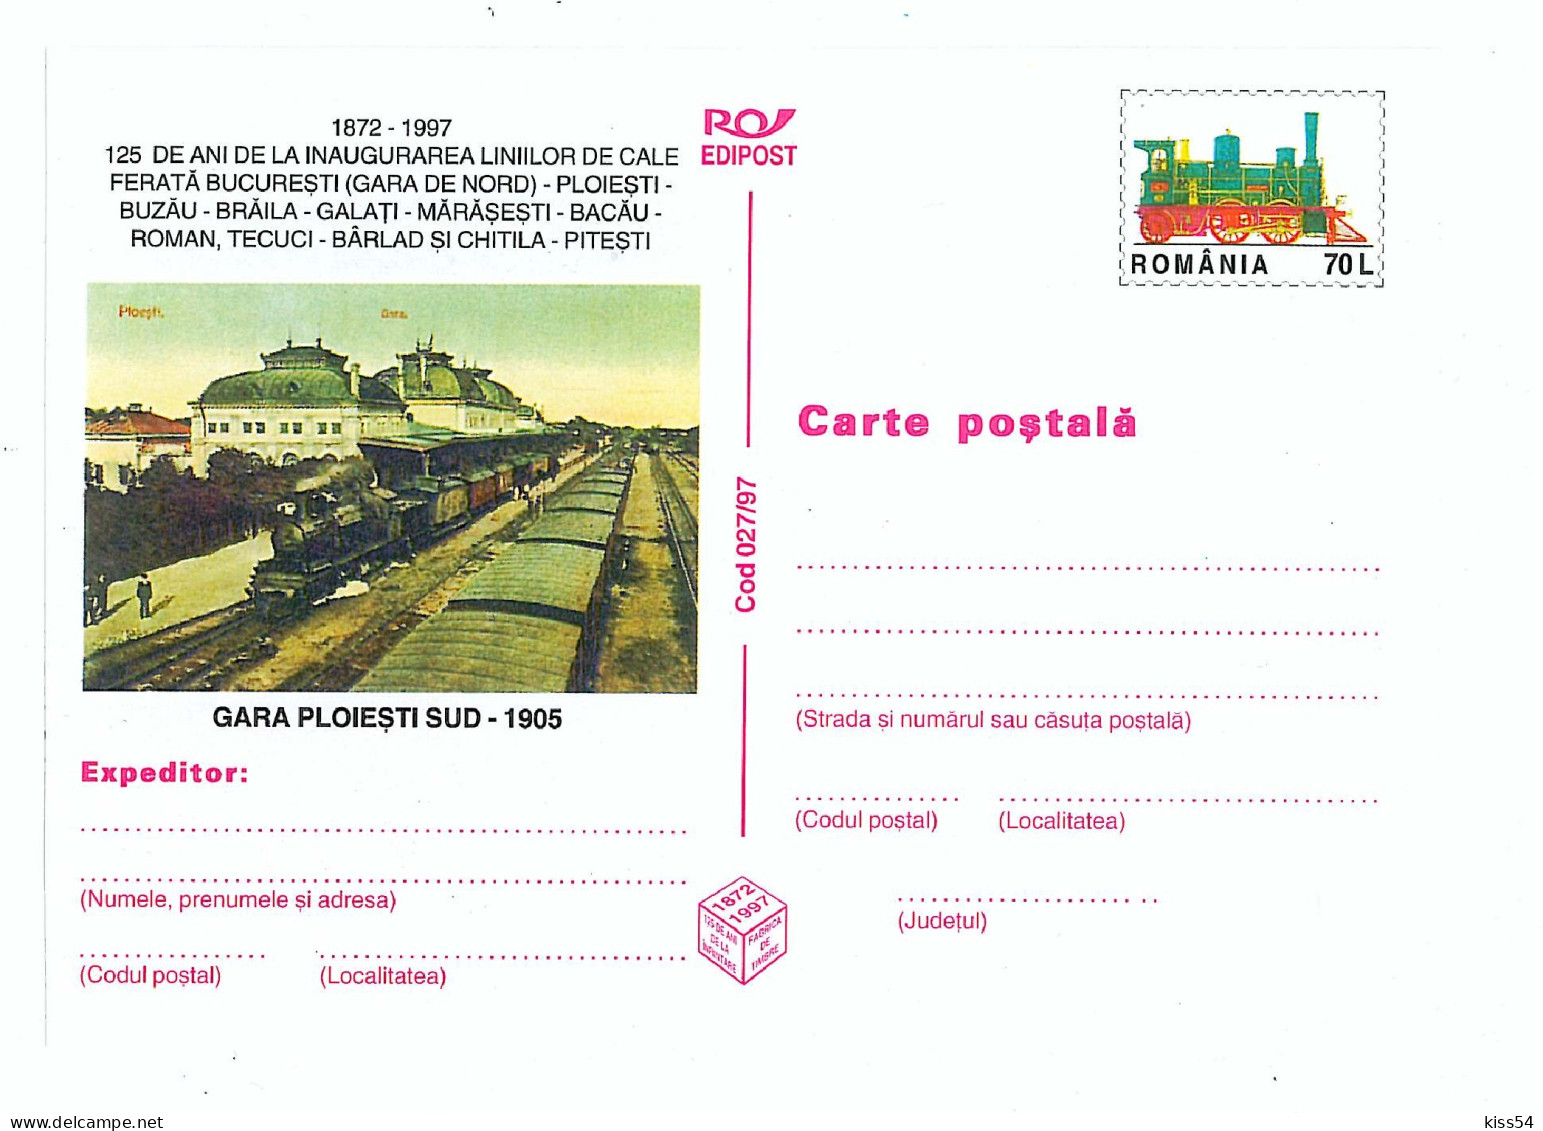 IP 97 - 27 Old Railway Station PLOIESTI SUD, Romania - Stationery - Unused - 1997 - Postal Stationery